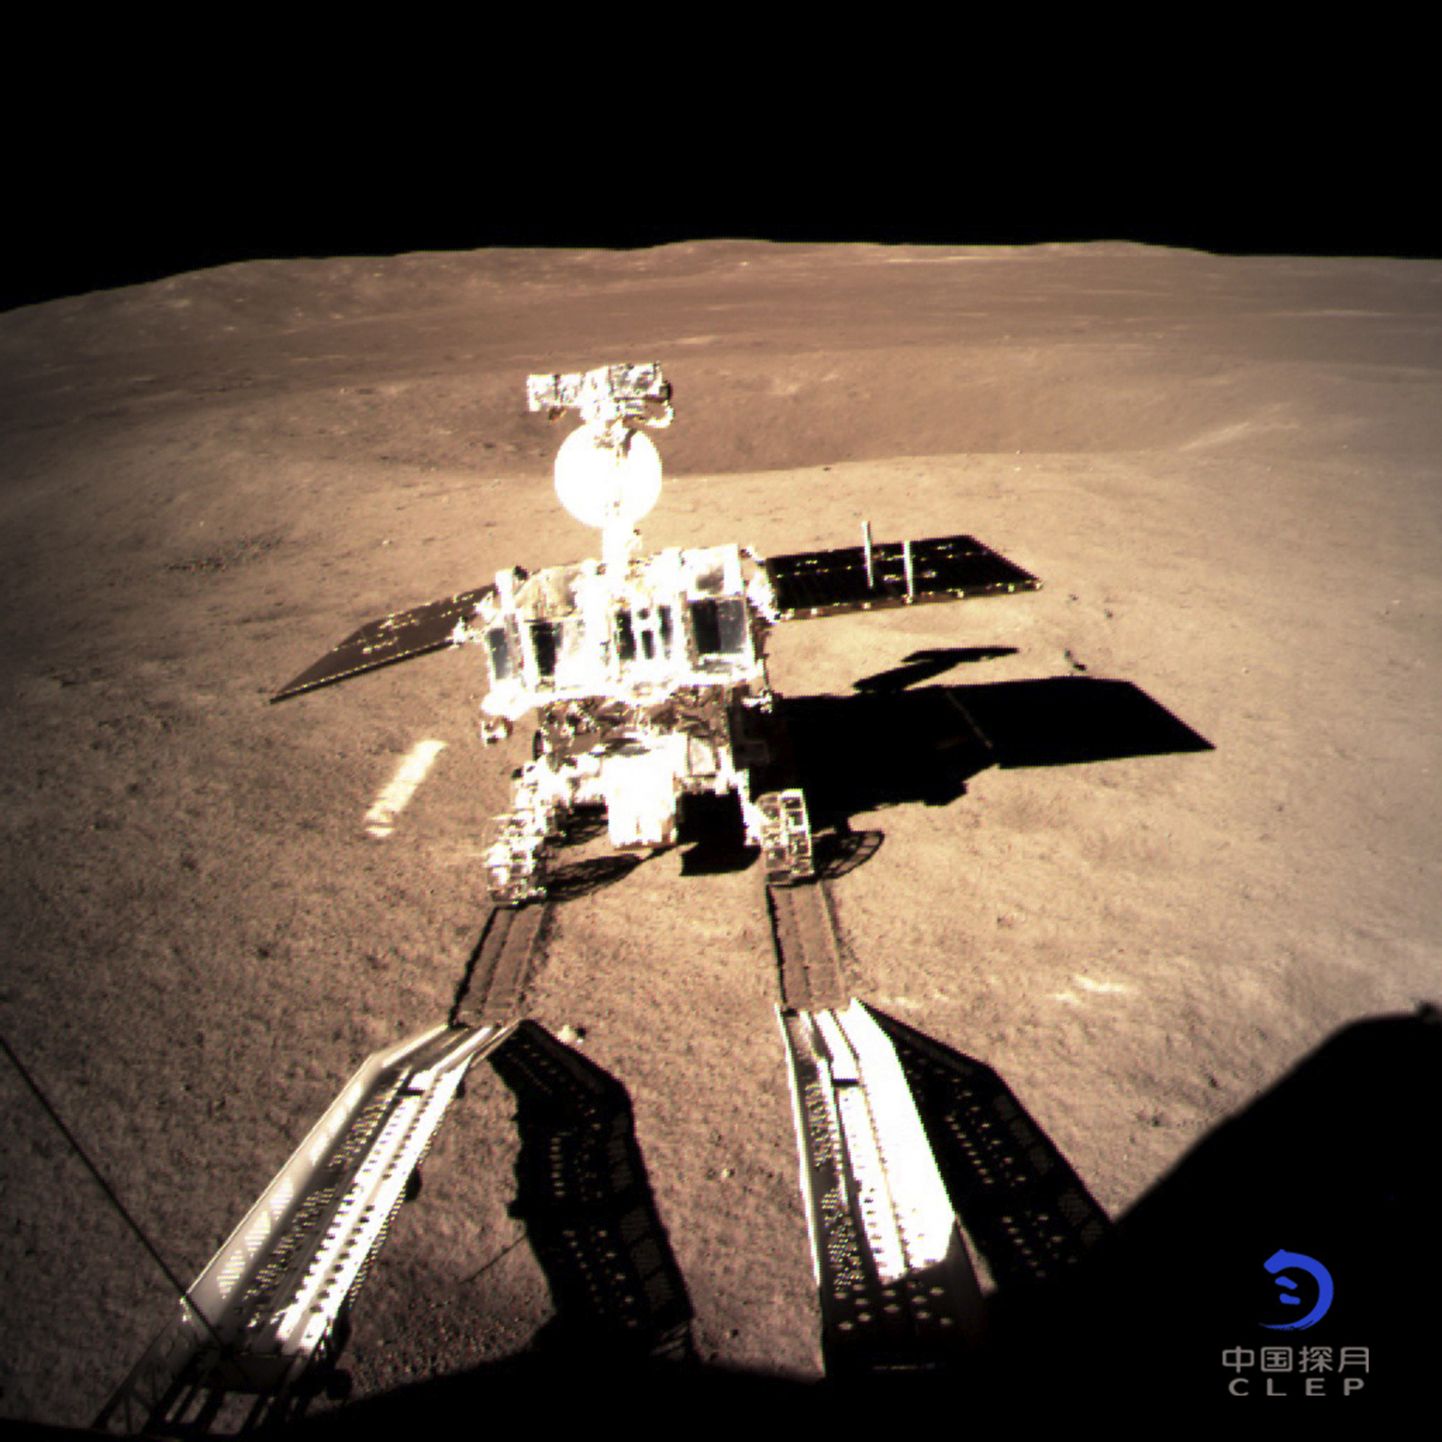 Ķīnas zondes "Chang'e 4" pašgājējs robots atstājis pēdu nospiedumus Mēness tumšajā pusē